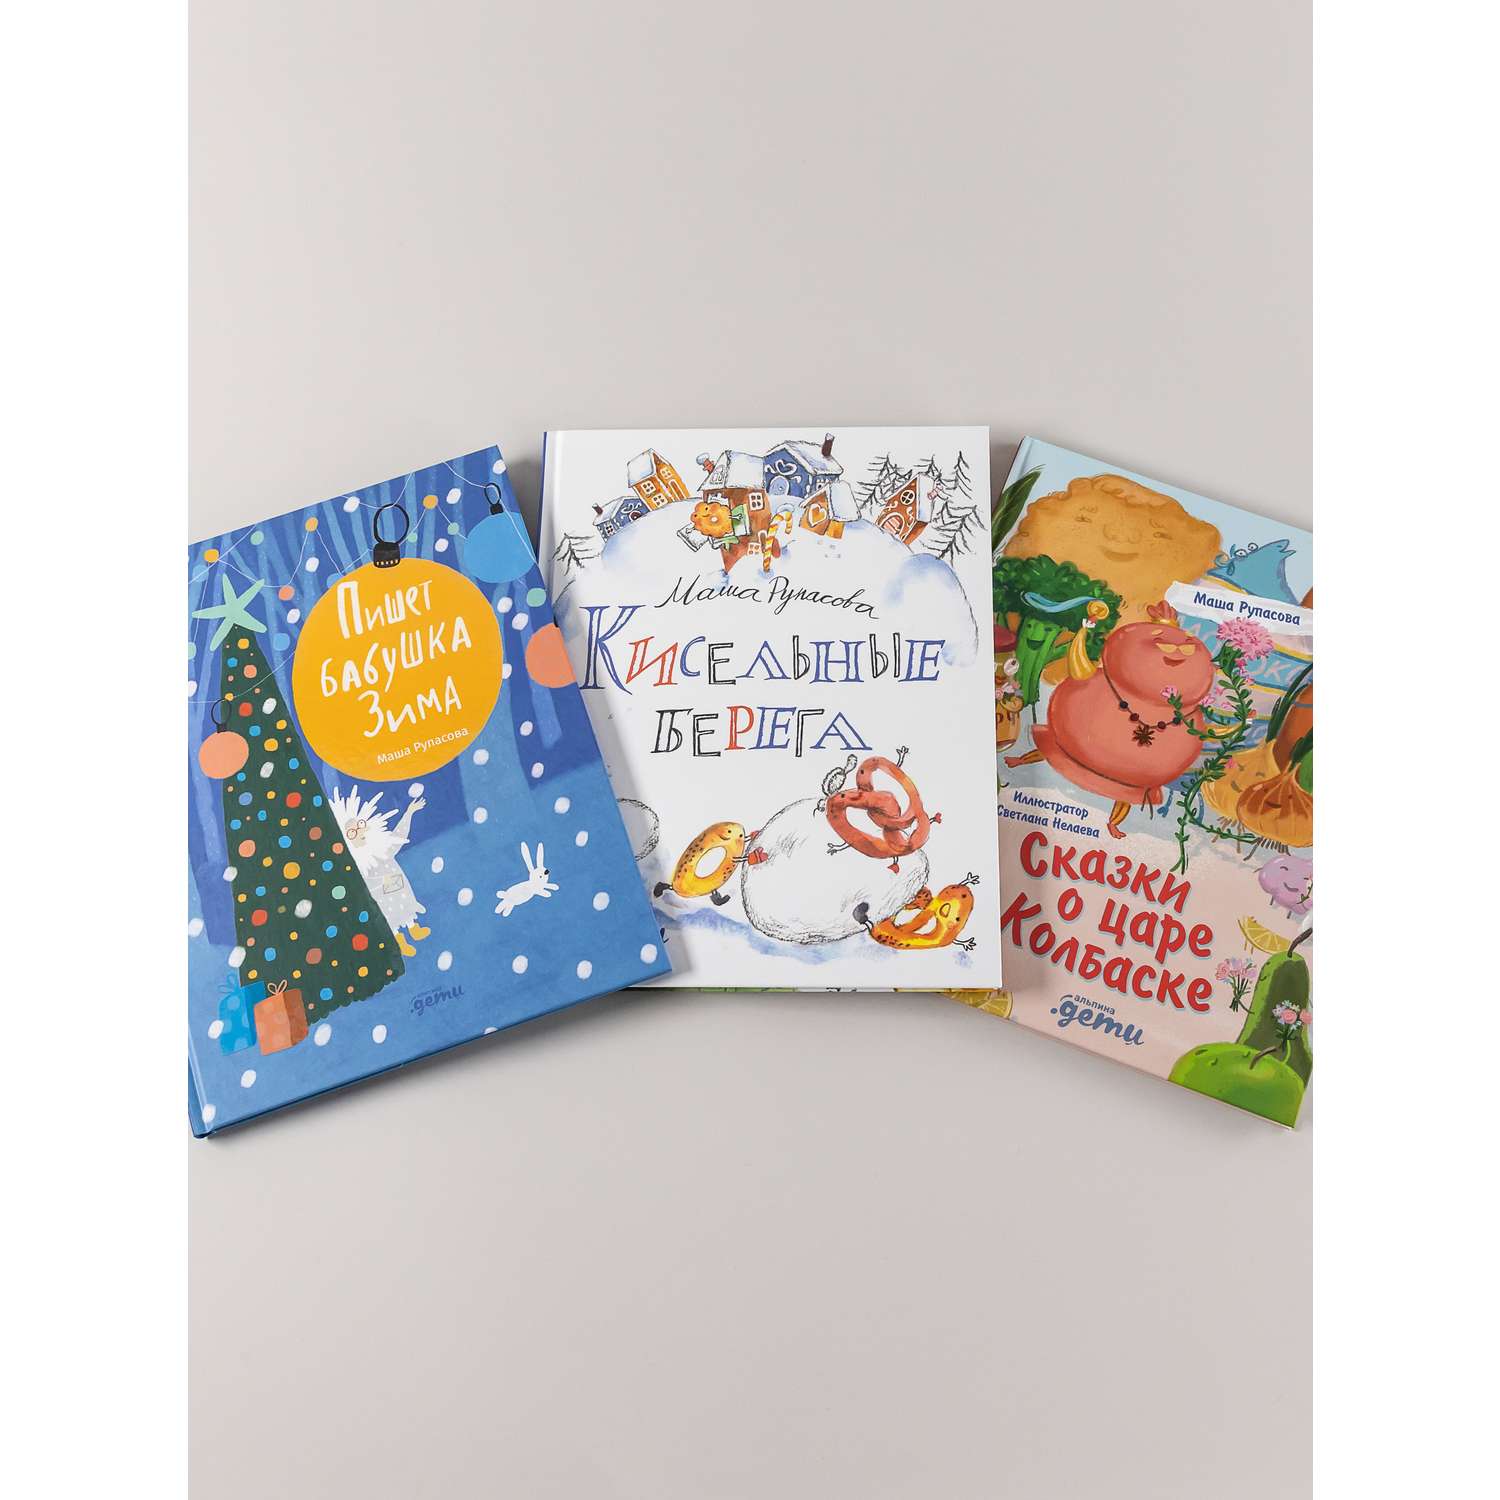 Книга Альпина. Дети Подарок на Новый год под ёлку от Маши Рупасовой/ 3 книги - фото 10